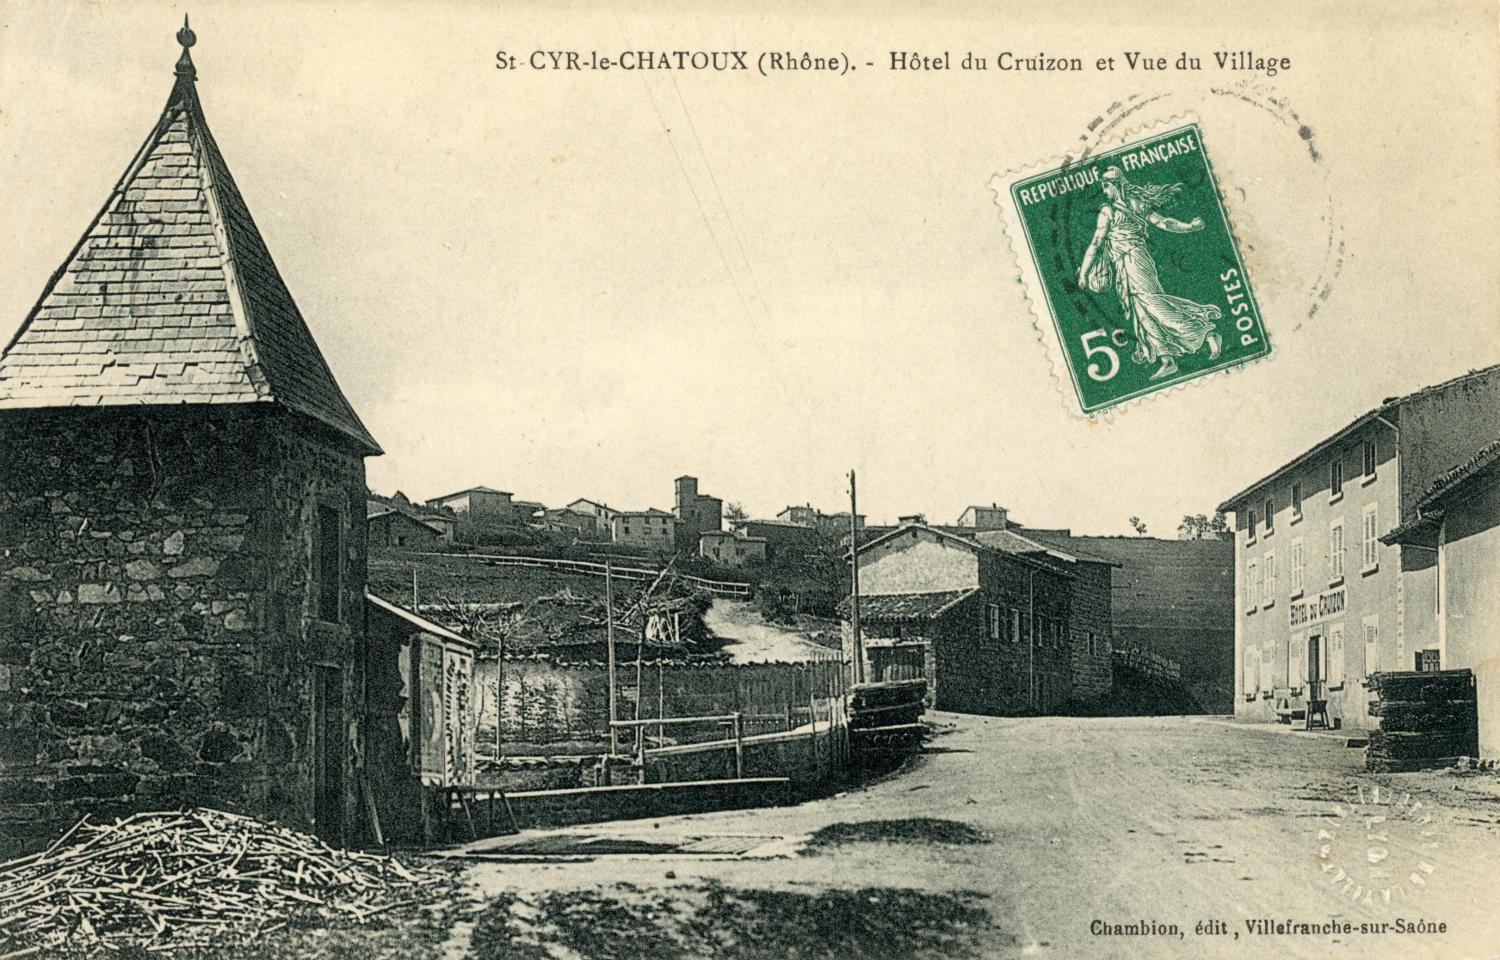 St-Cyr-le-Chatoux (Rhône). - Hôtel du Cruizon et Vue du Village